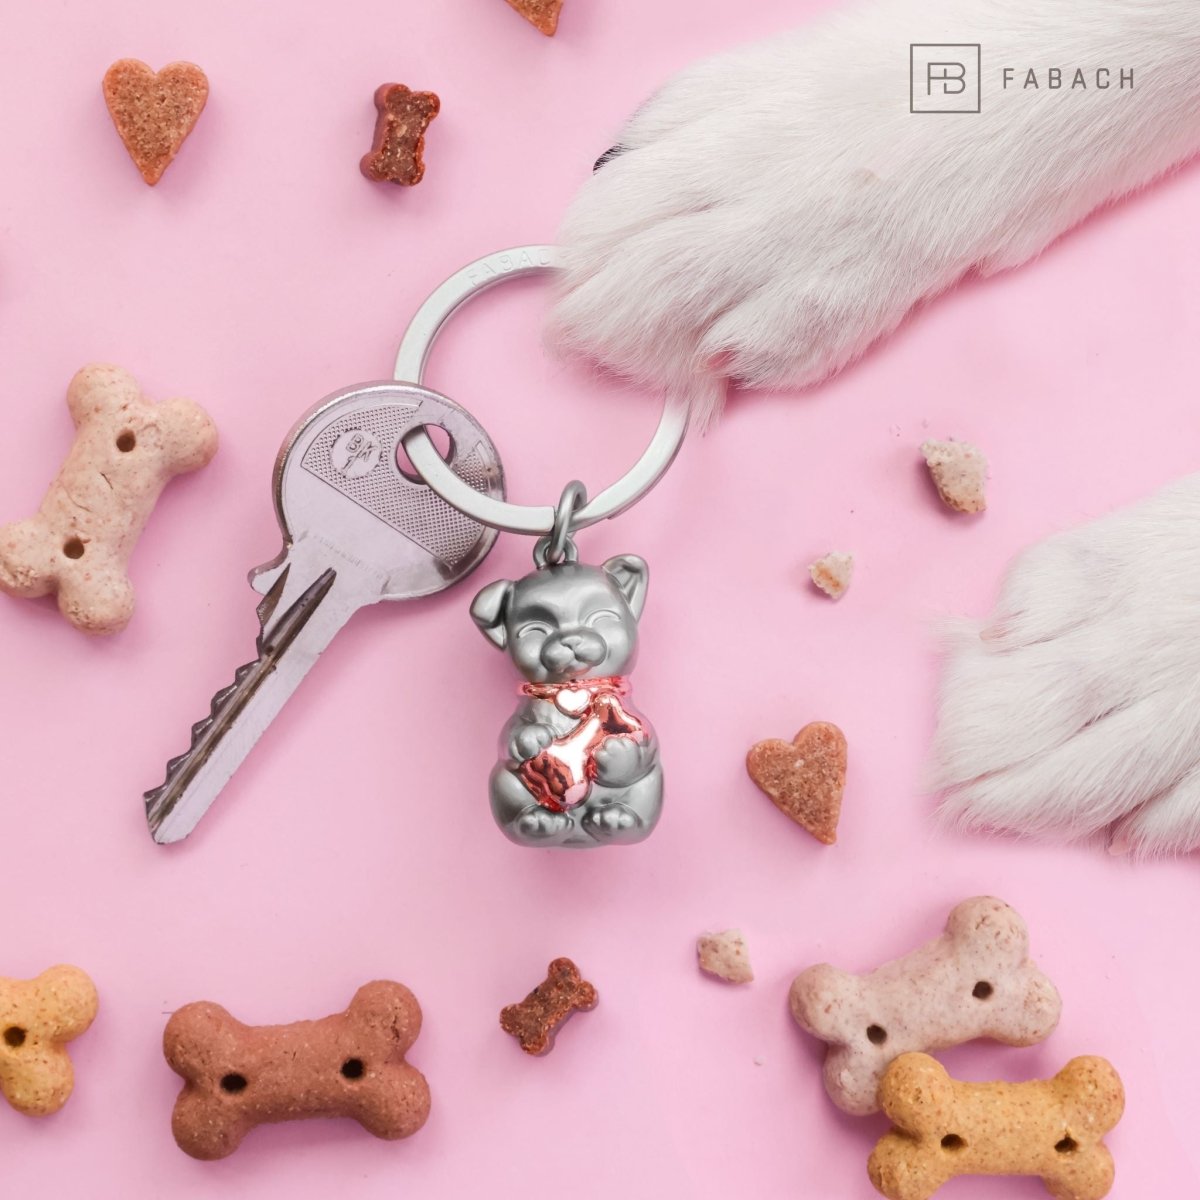 Puppy Hund Schlüsselanhänger - Süßes Hündchen Anhänger - Glücksbring